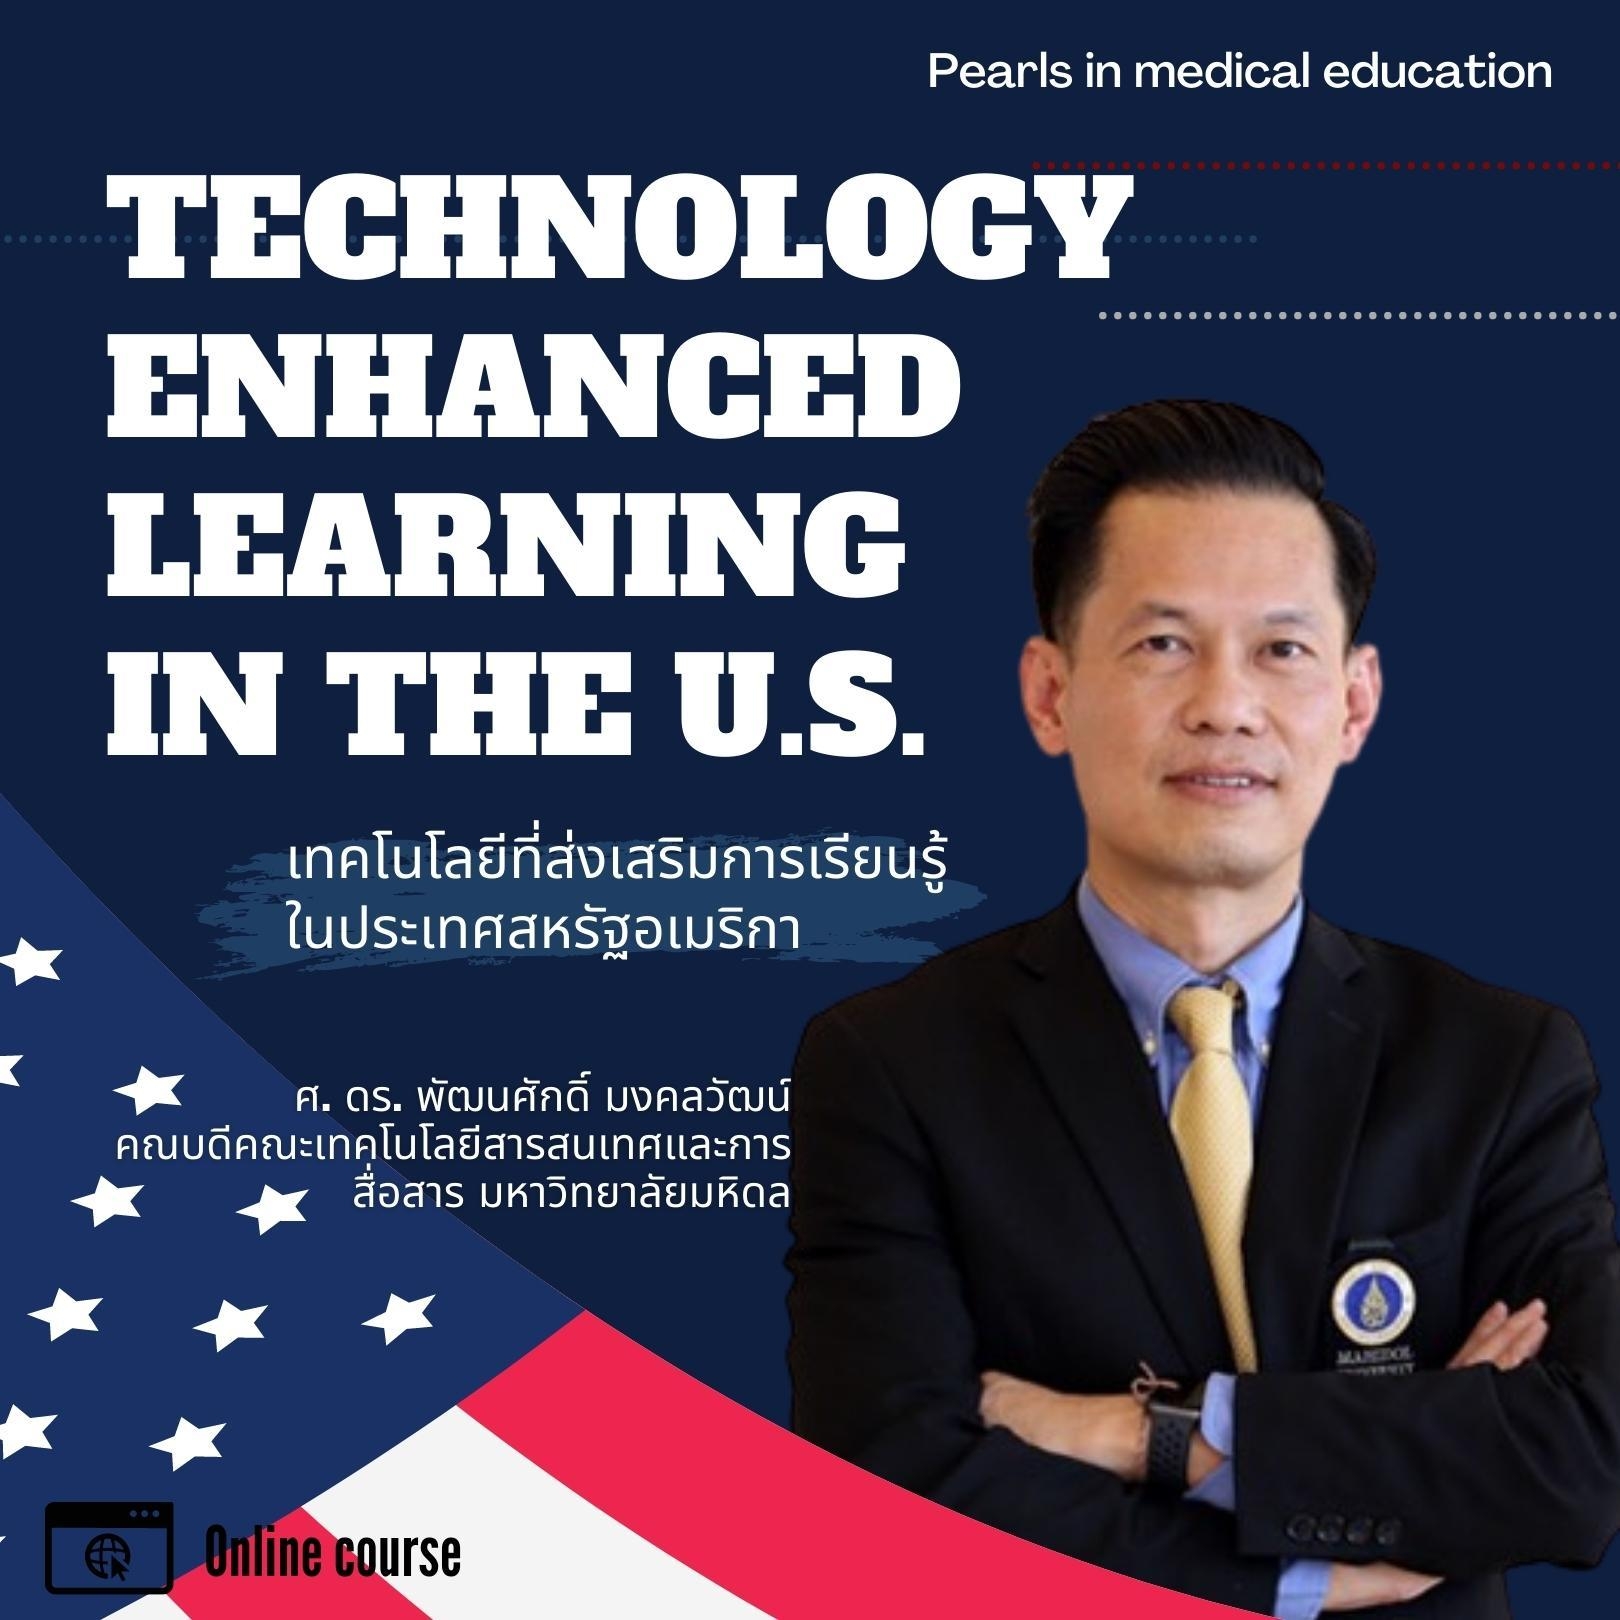  Technology Enhanced Learning in the U.S. เทคโนโลยีที่ส่งเสริมการเรียนรู้ในประเทศสหรัฐอเมริกา